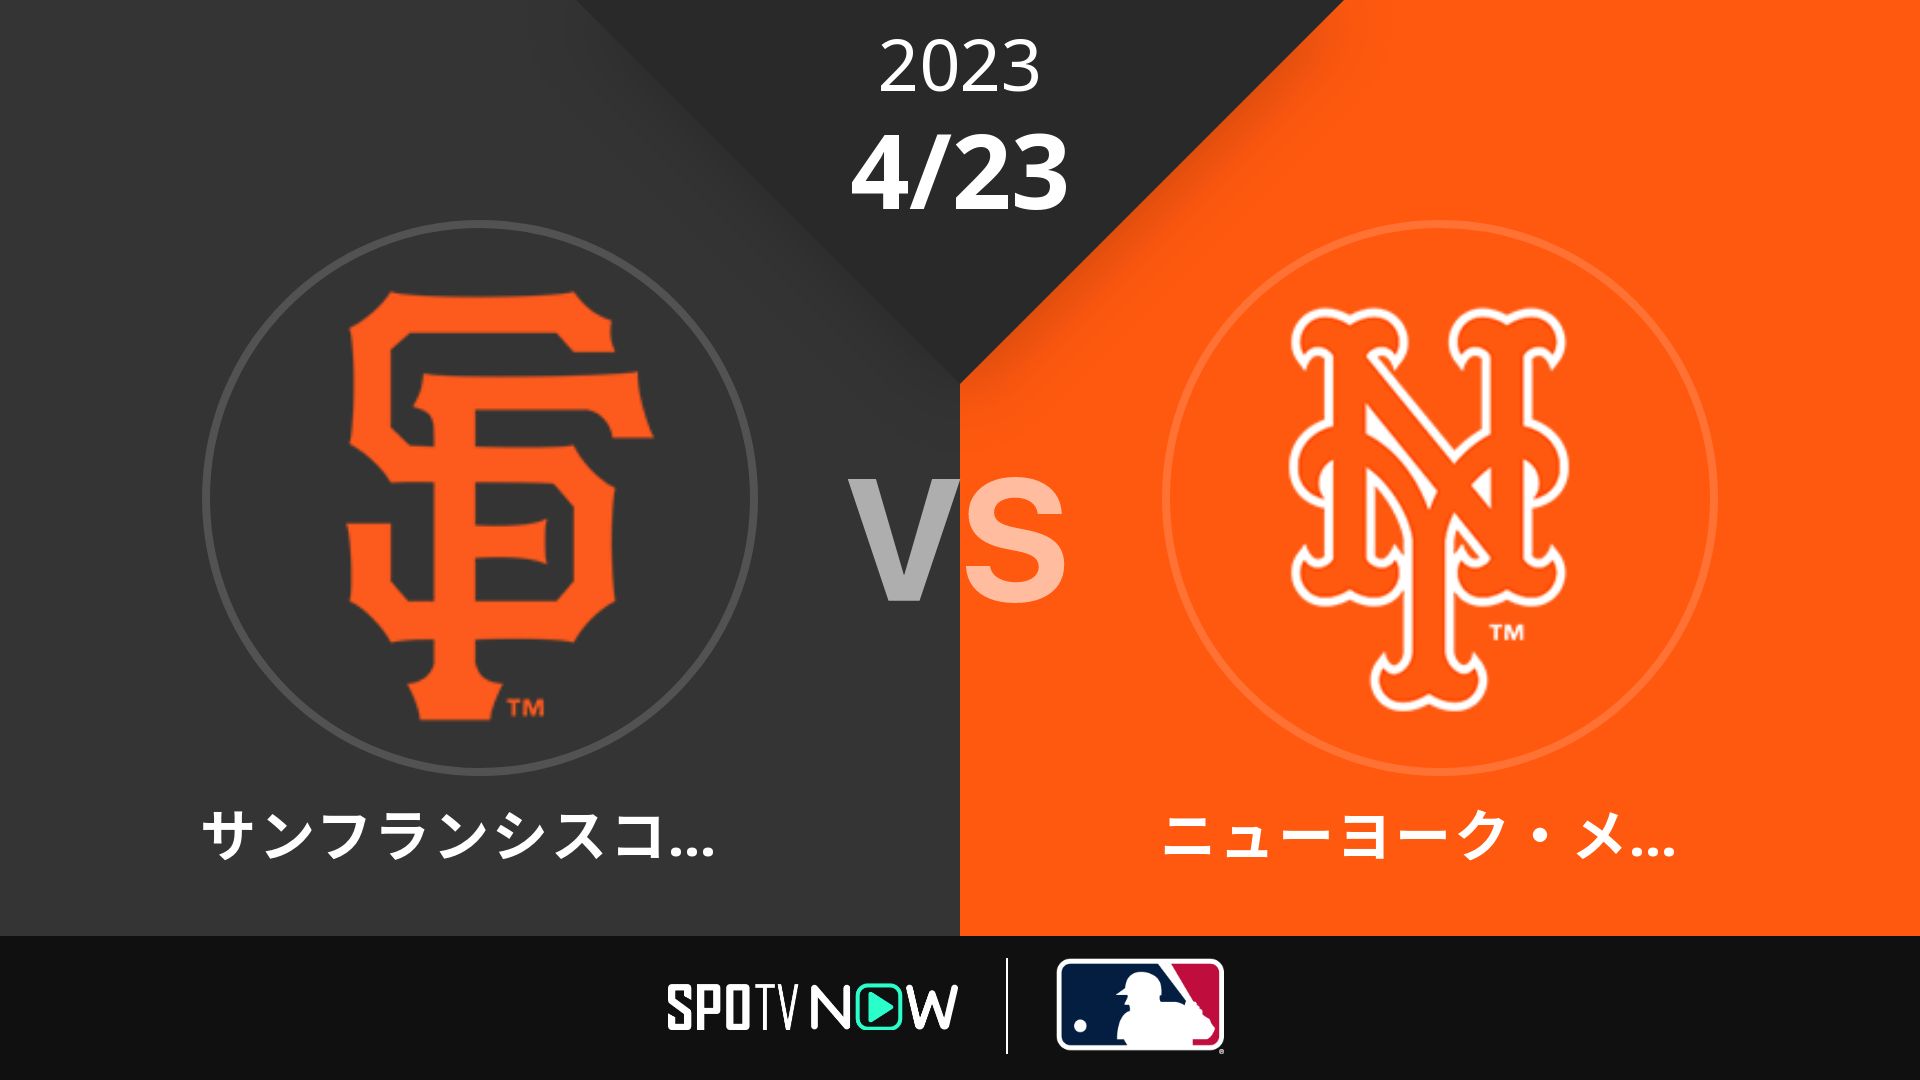 2023/4/23 ジャイアンツ vs メッツ [MLB]